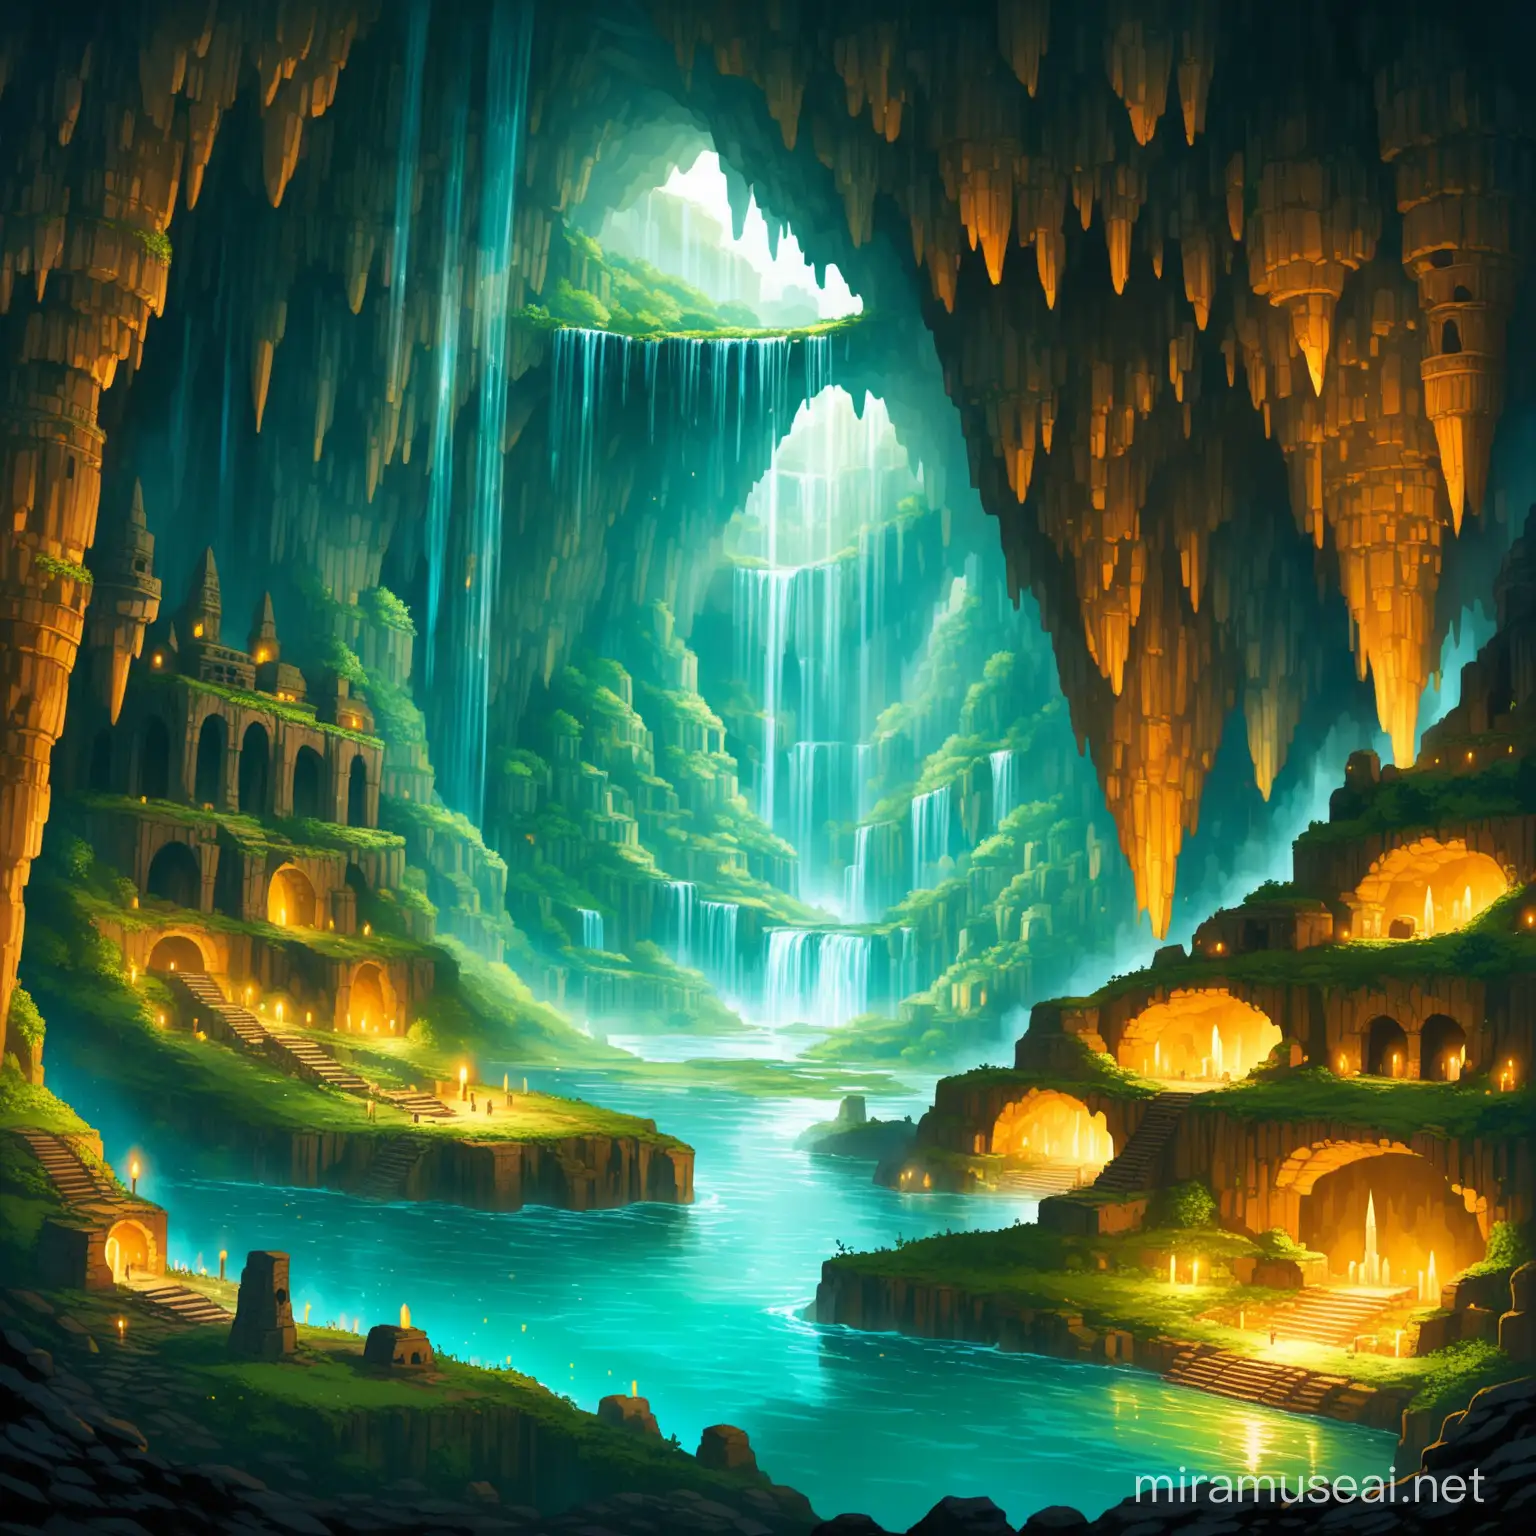 unterirdische Ruinen, stadt, katakomben, kristalle wachsen aus dem Boden, uralte Kultur, tief unter der Erde, magisch, viele Höhlen, wasserfälle